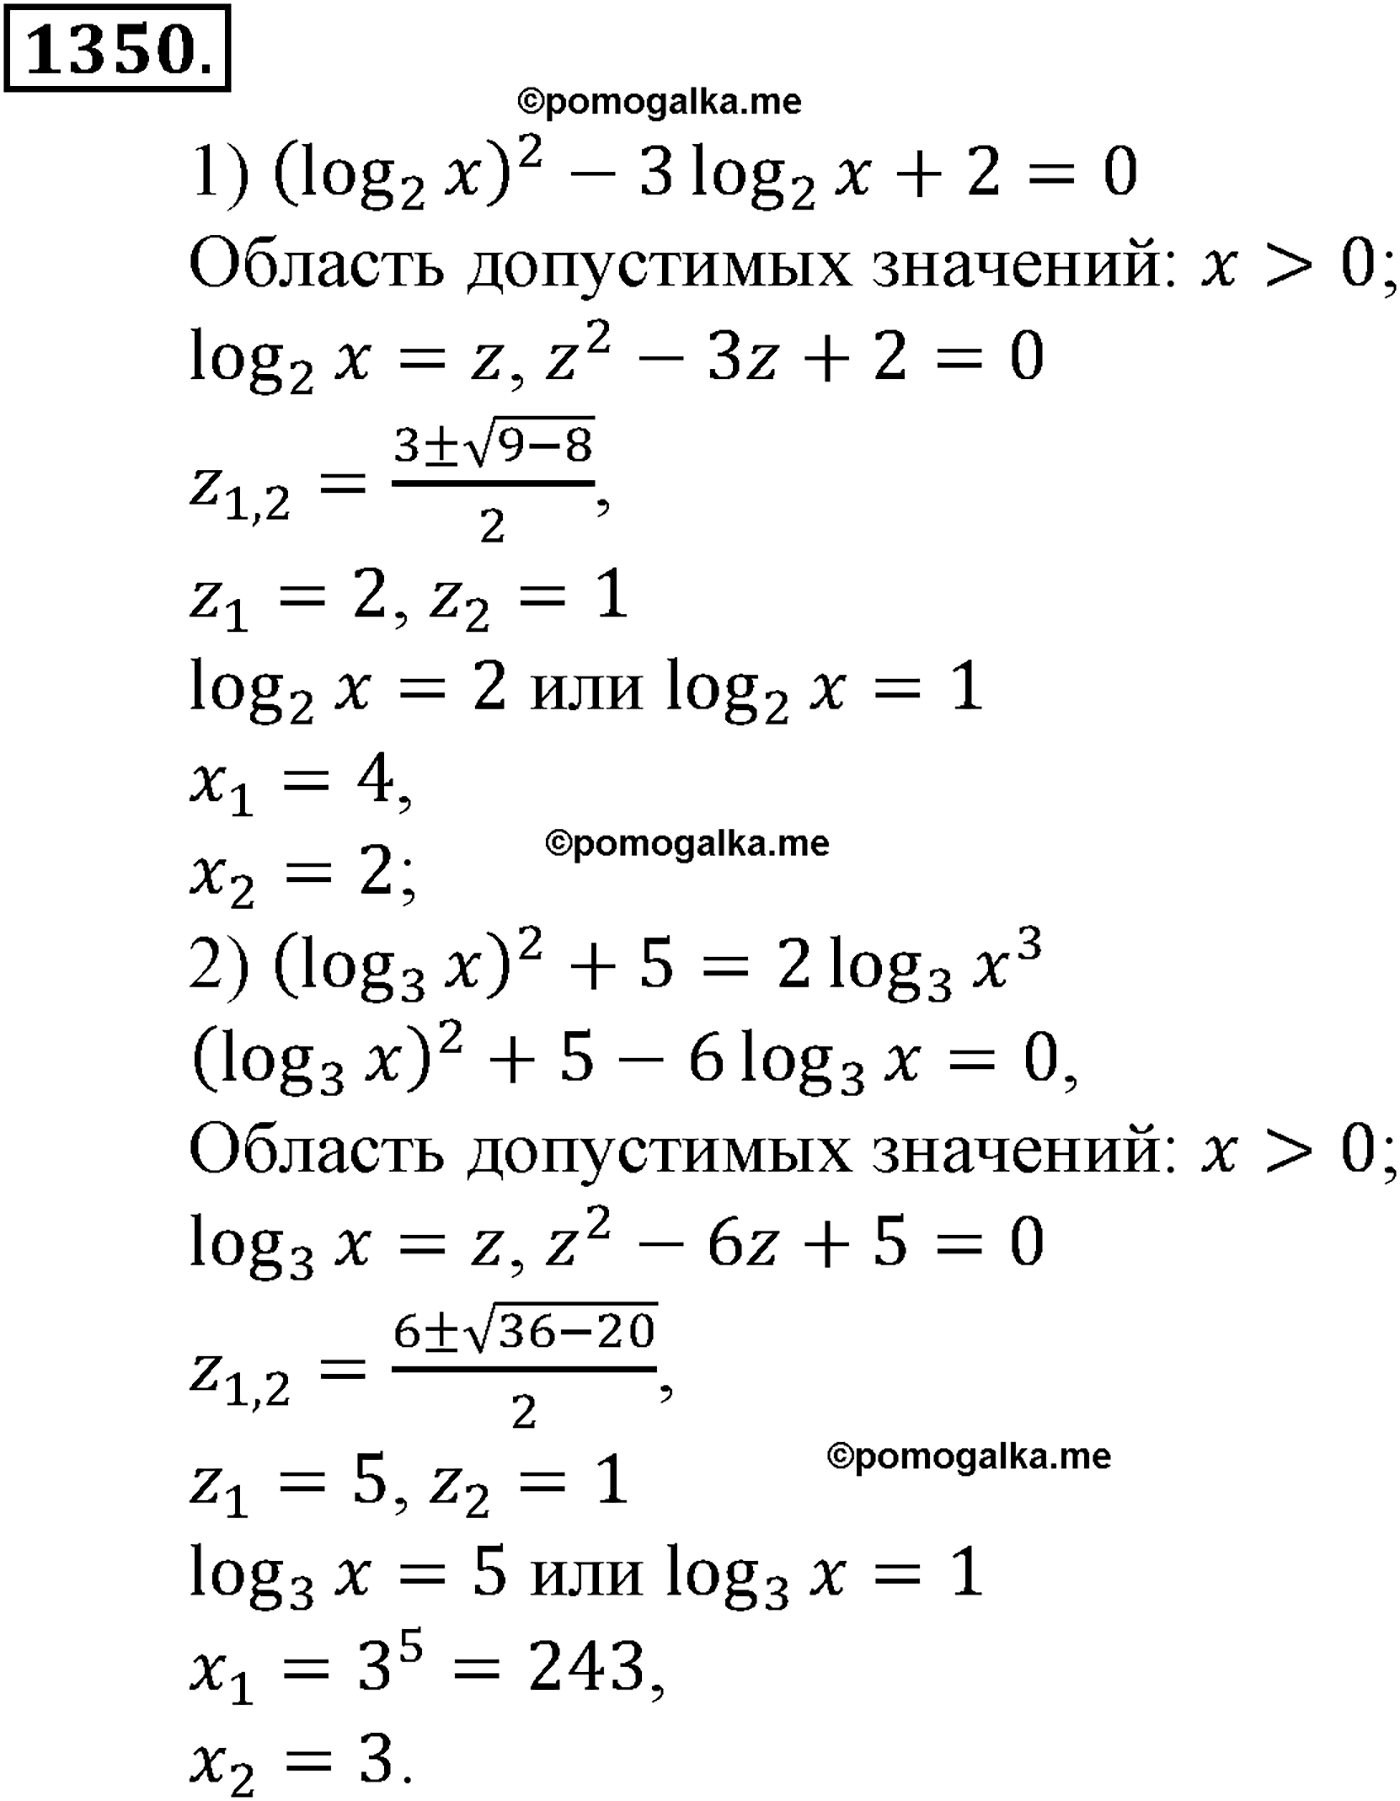 разбор задачи №1350 по алгебре за 10-11 класс из учебника Алимова, Колягина